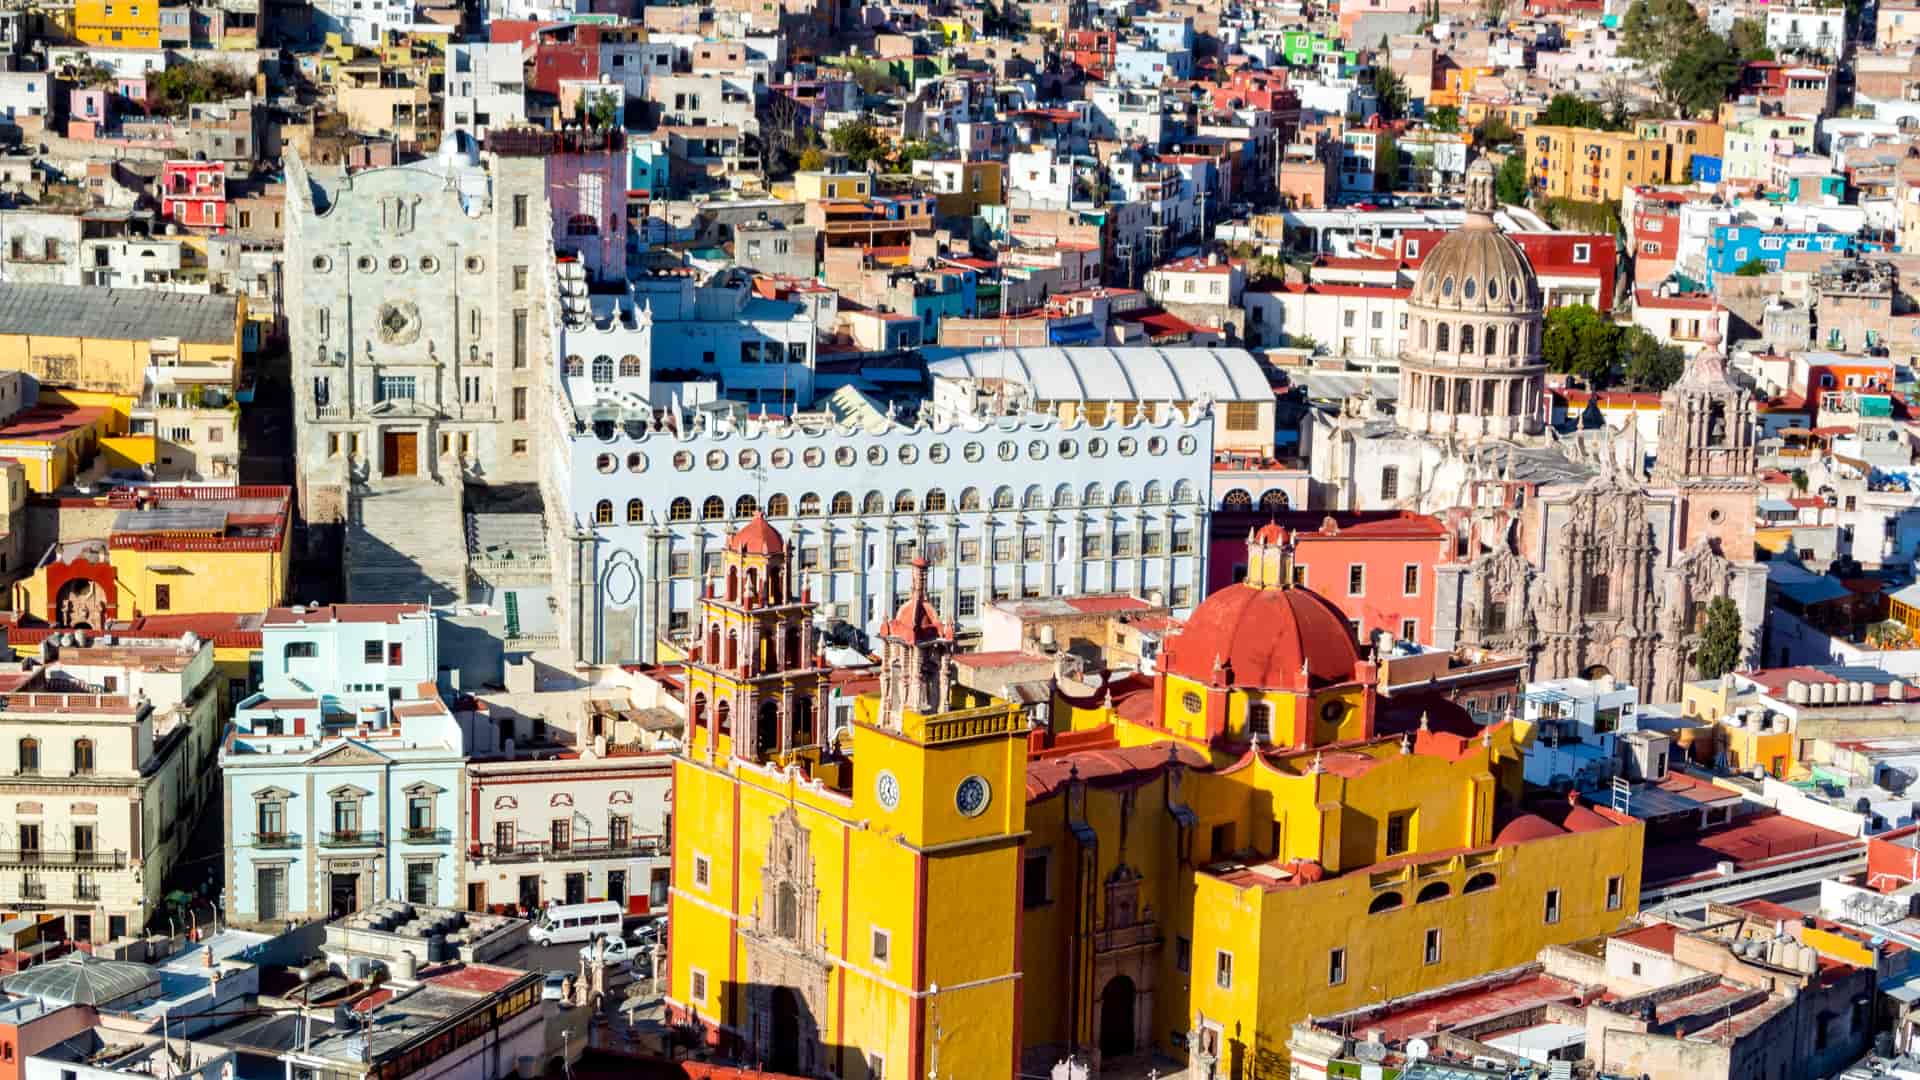 vista aerea de la bonita ciudad de guanajuato mexico donde se pueden encontrar sucursales de megacable